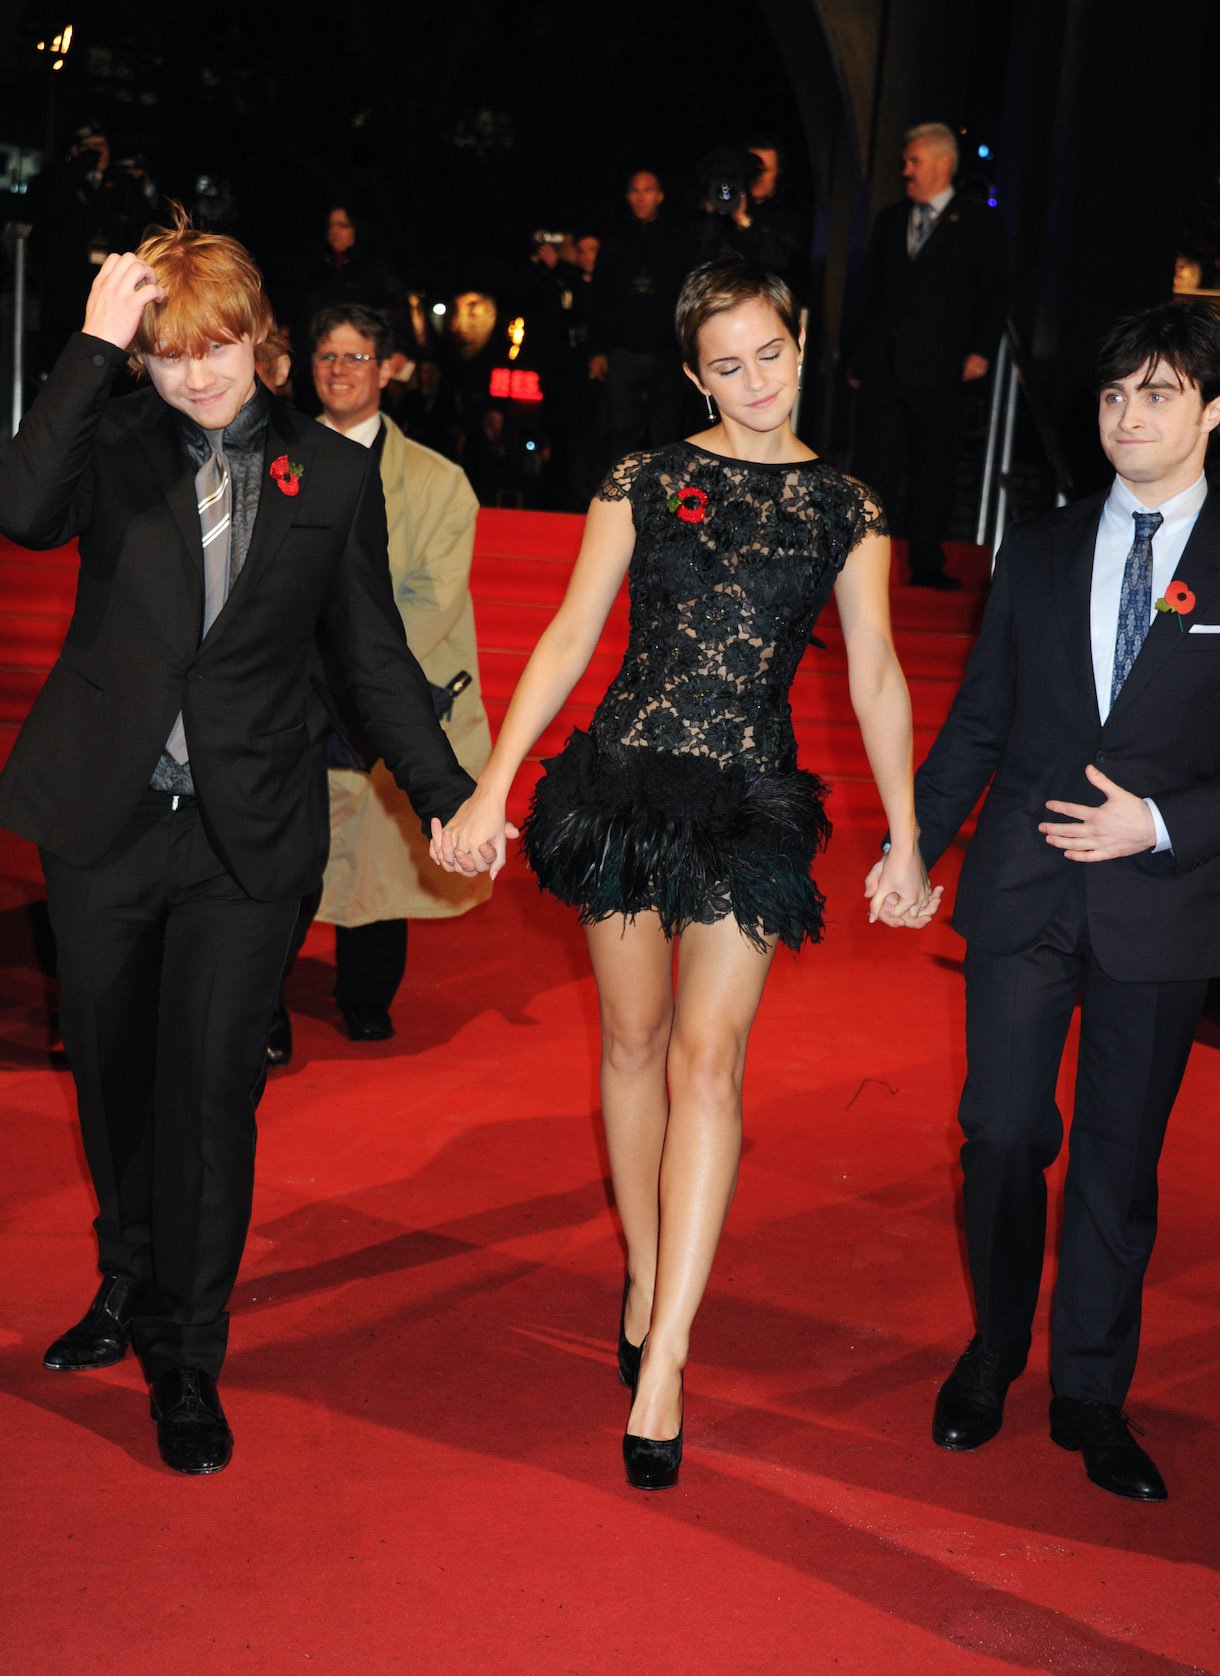 Rupert Grint, Emma Watson, and Daniel Radcliffe